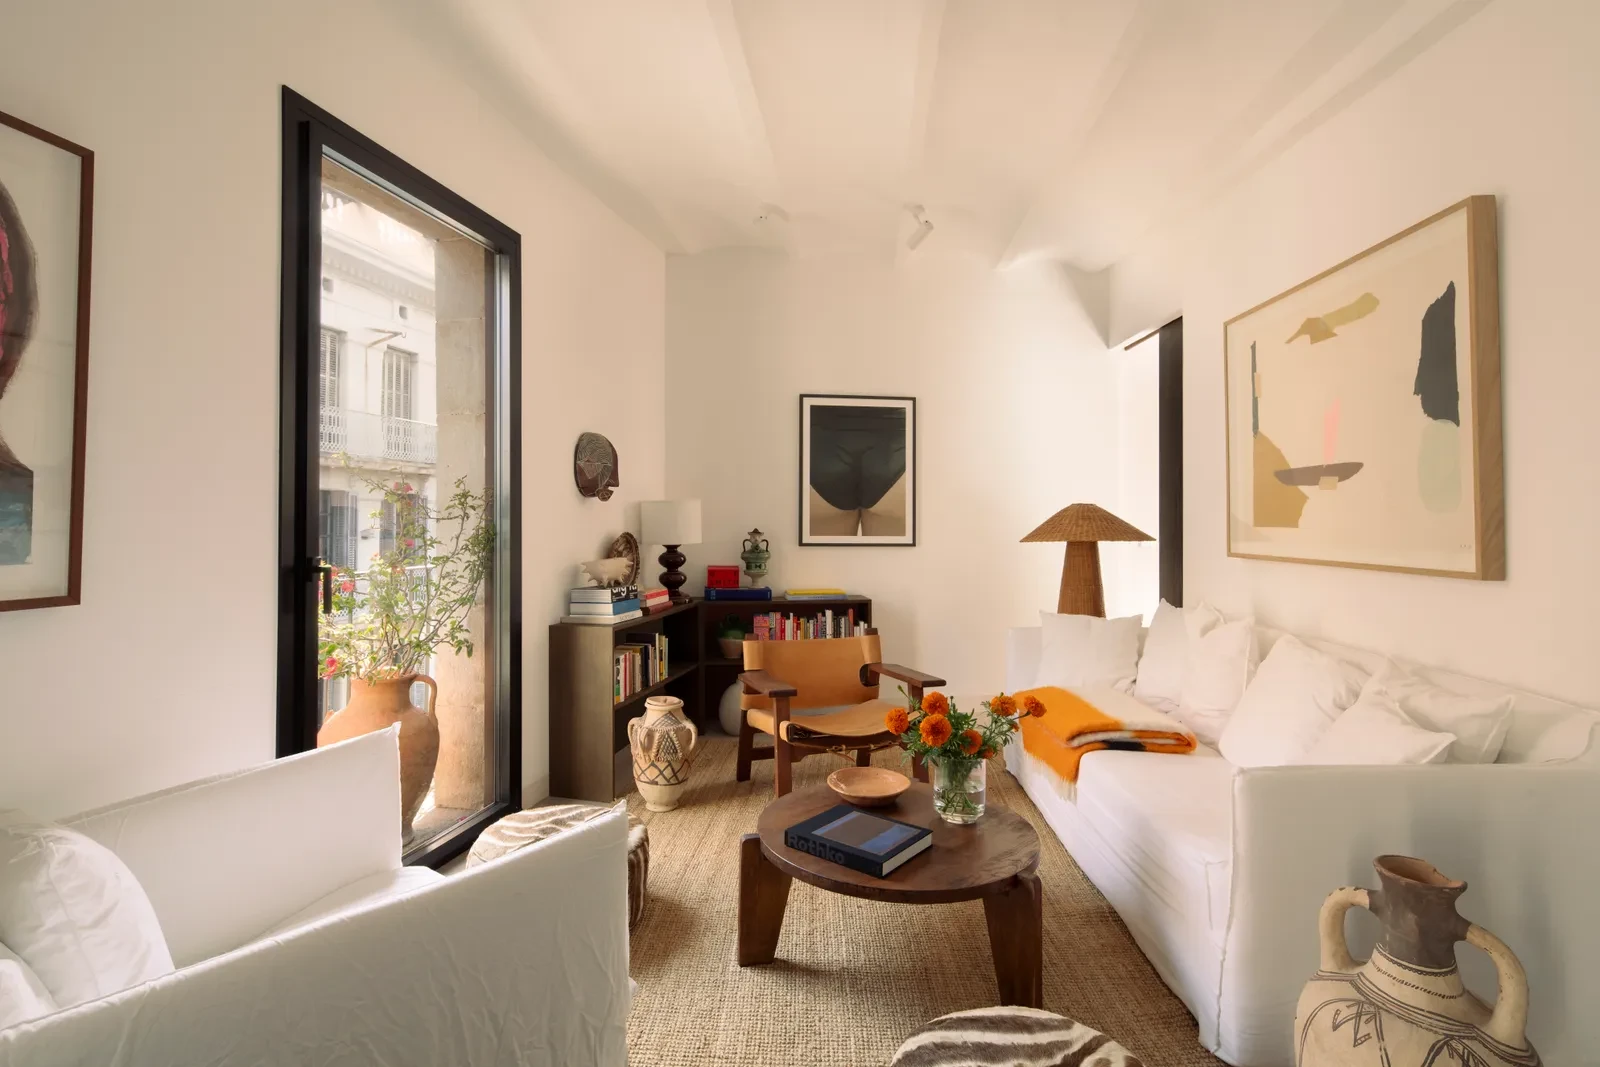 Trang bị nội thất cho một phòng khách dài và hẹp chưa bao giờ là điều dễ dàng, nhưng nhà thiết kế nội thất Juan Moreno López-Calull và nhà thiết kế đồ họa Pieter de Groot đã khiến nó trông như một cơn gió nhẹ trong căn hộ rộng 600 m2 ở Barcelona của họ. Với ghế sofa Sant Gervasoni và bàn cà phê Jean Prouvé, khu vực tiếp khách thoải mái nhưng tinh tế. Tuy nhiên, phần tuyệt vời nhất là giá sách ở góc thấp, thông minh, biến không gian chết thành nơi lưu trữ.